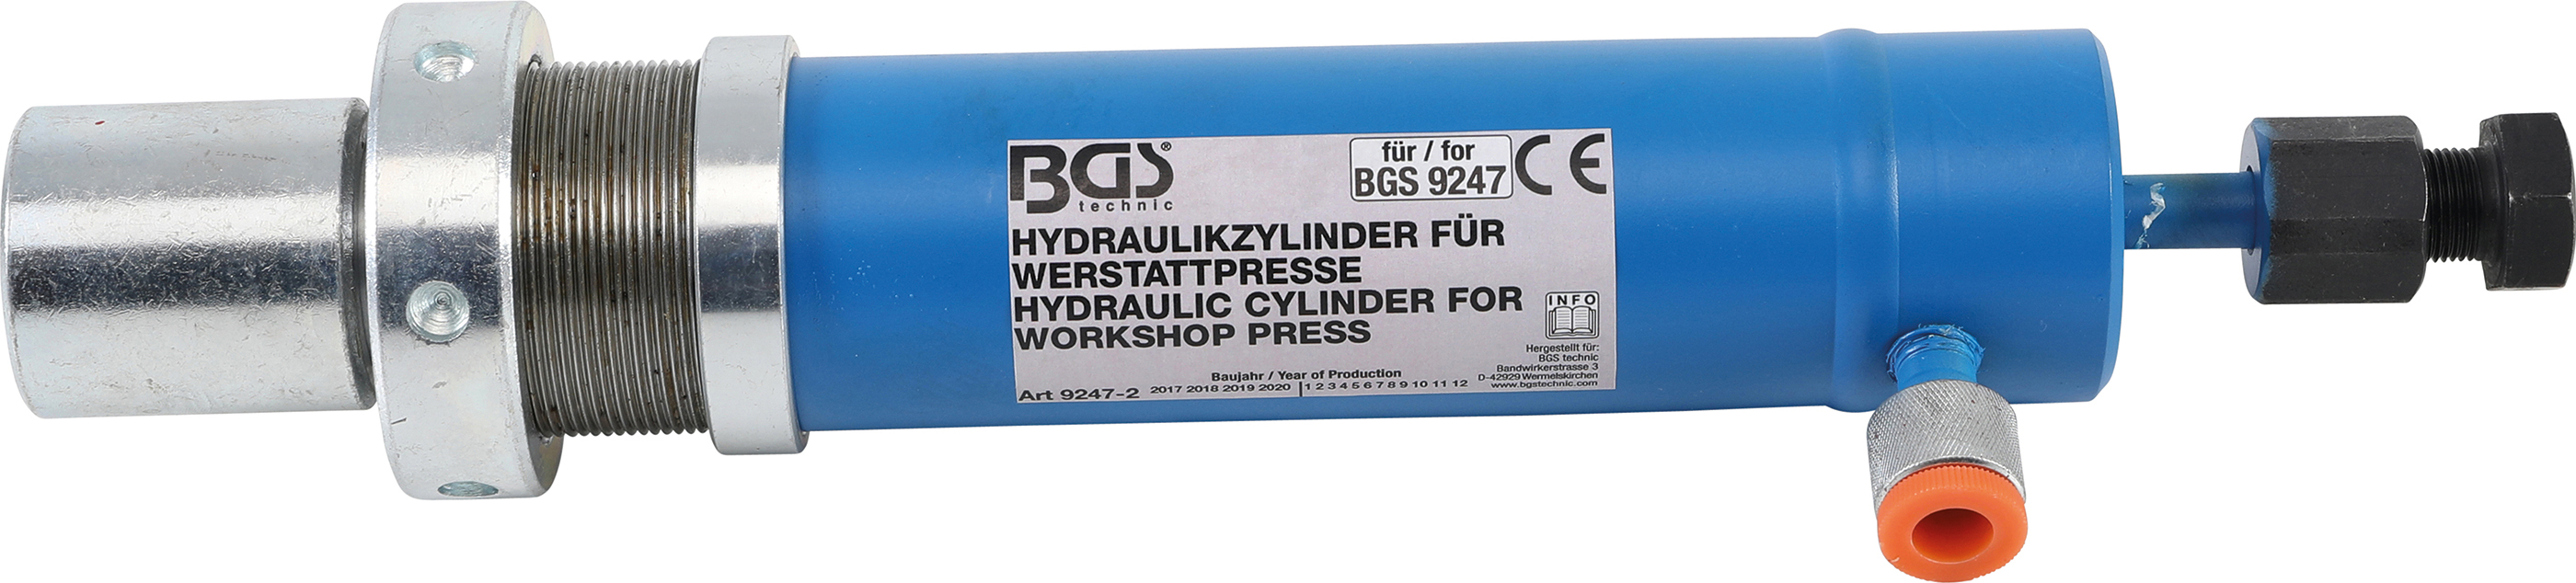 BGS Hydraulikzylinder für Art. 9247